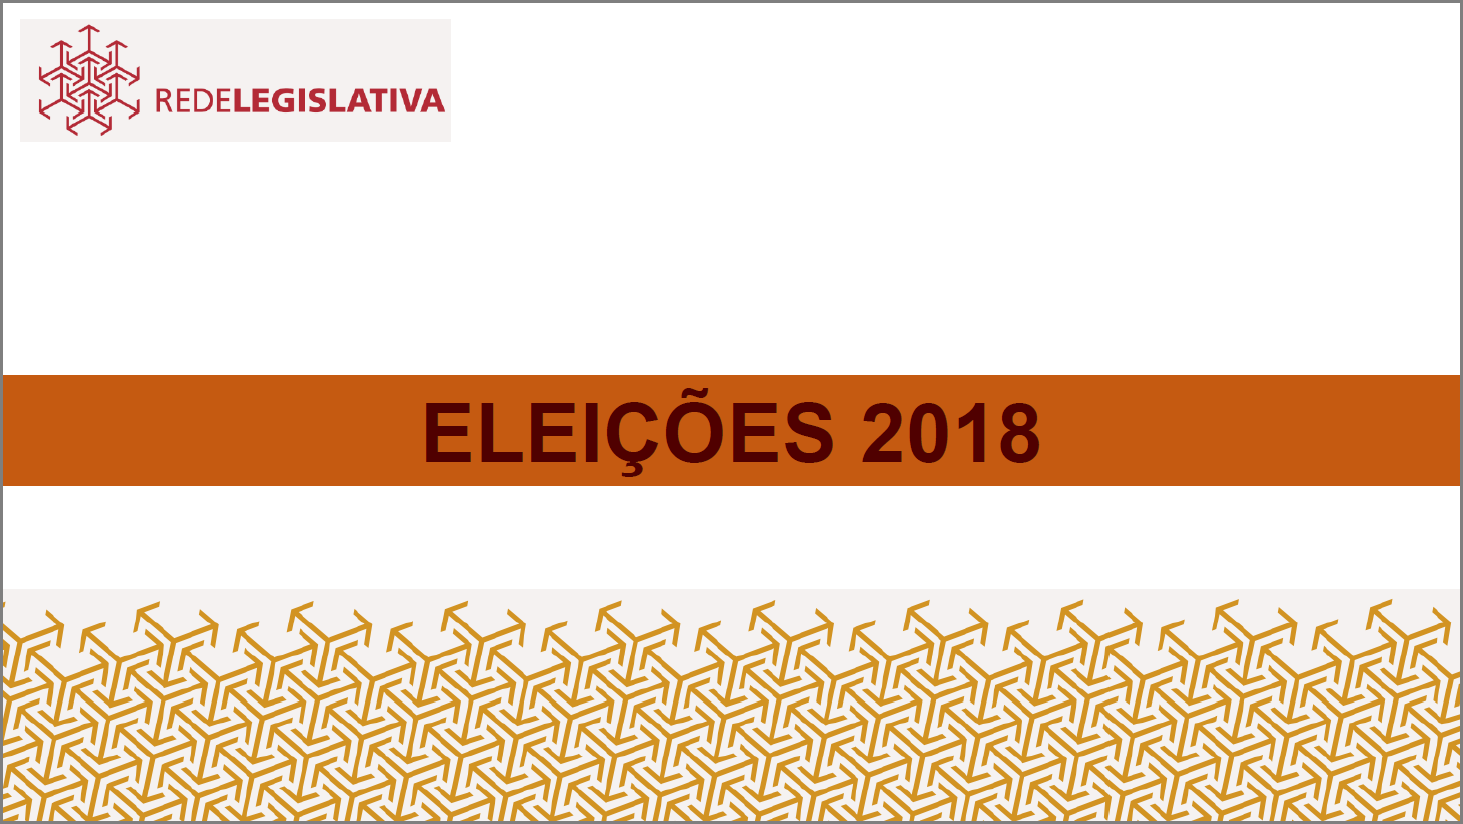 Rede Legislativa orienta emissoras para as Eleições 2018